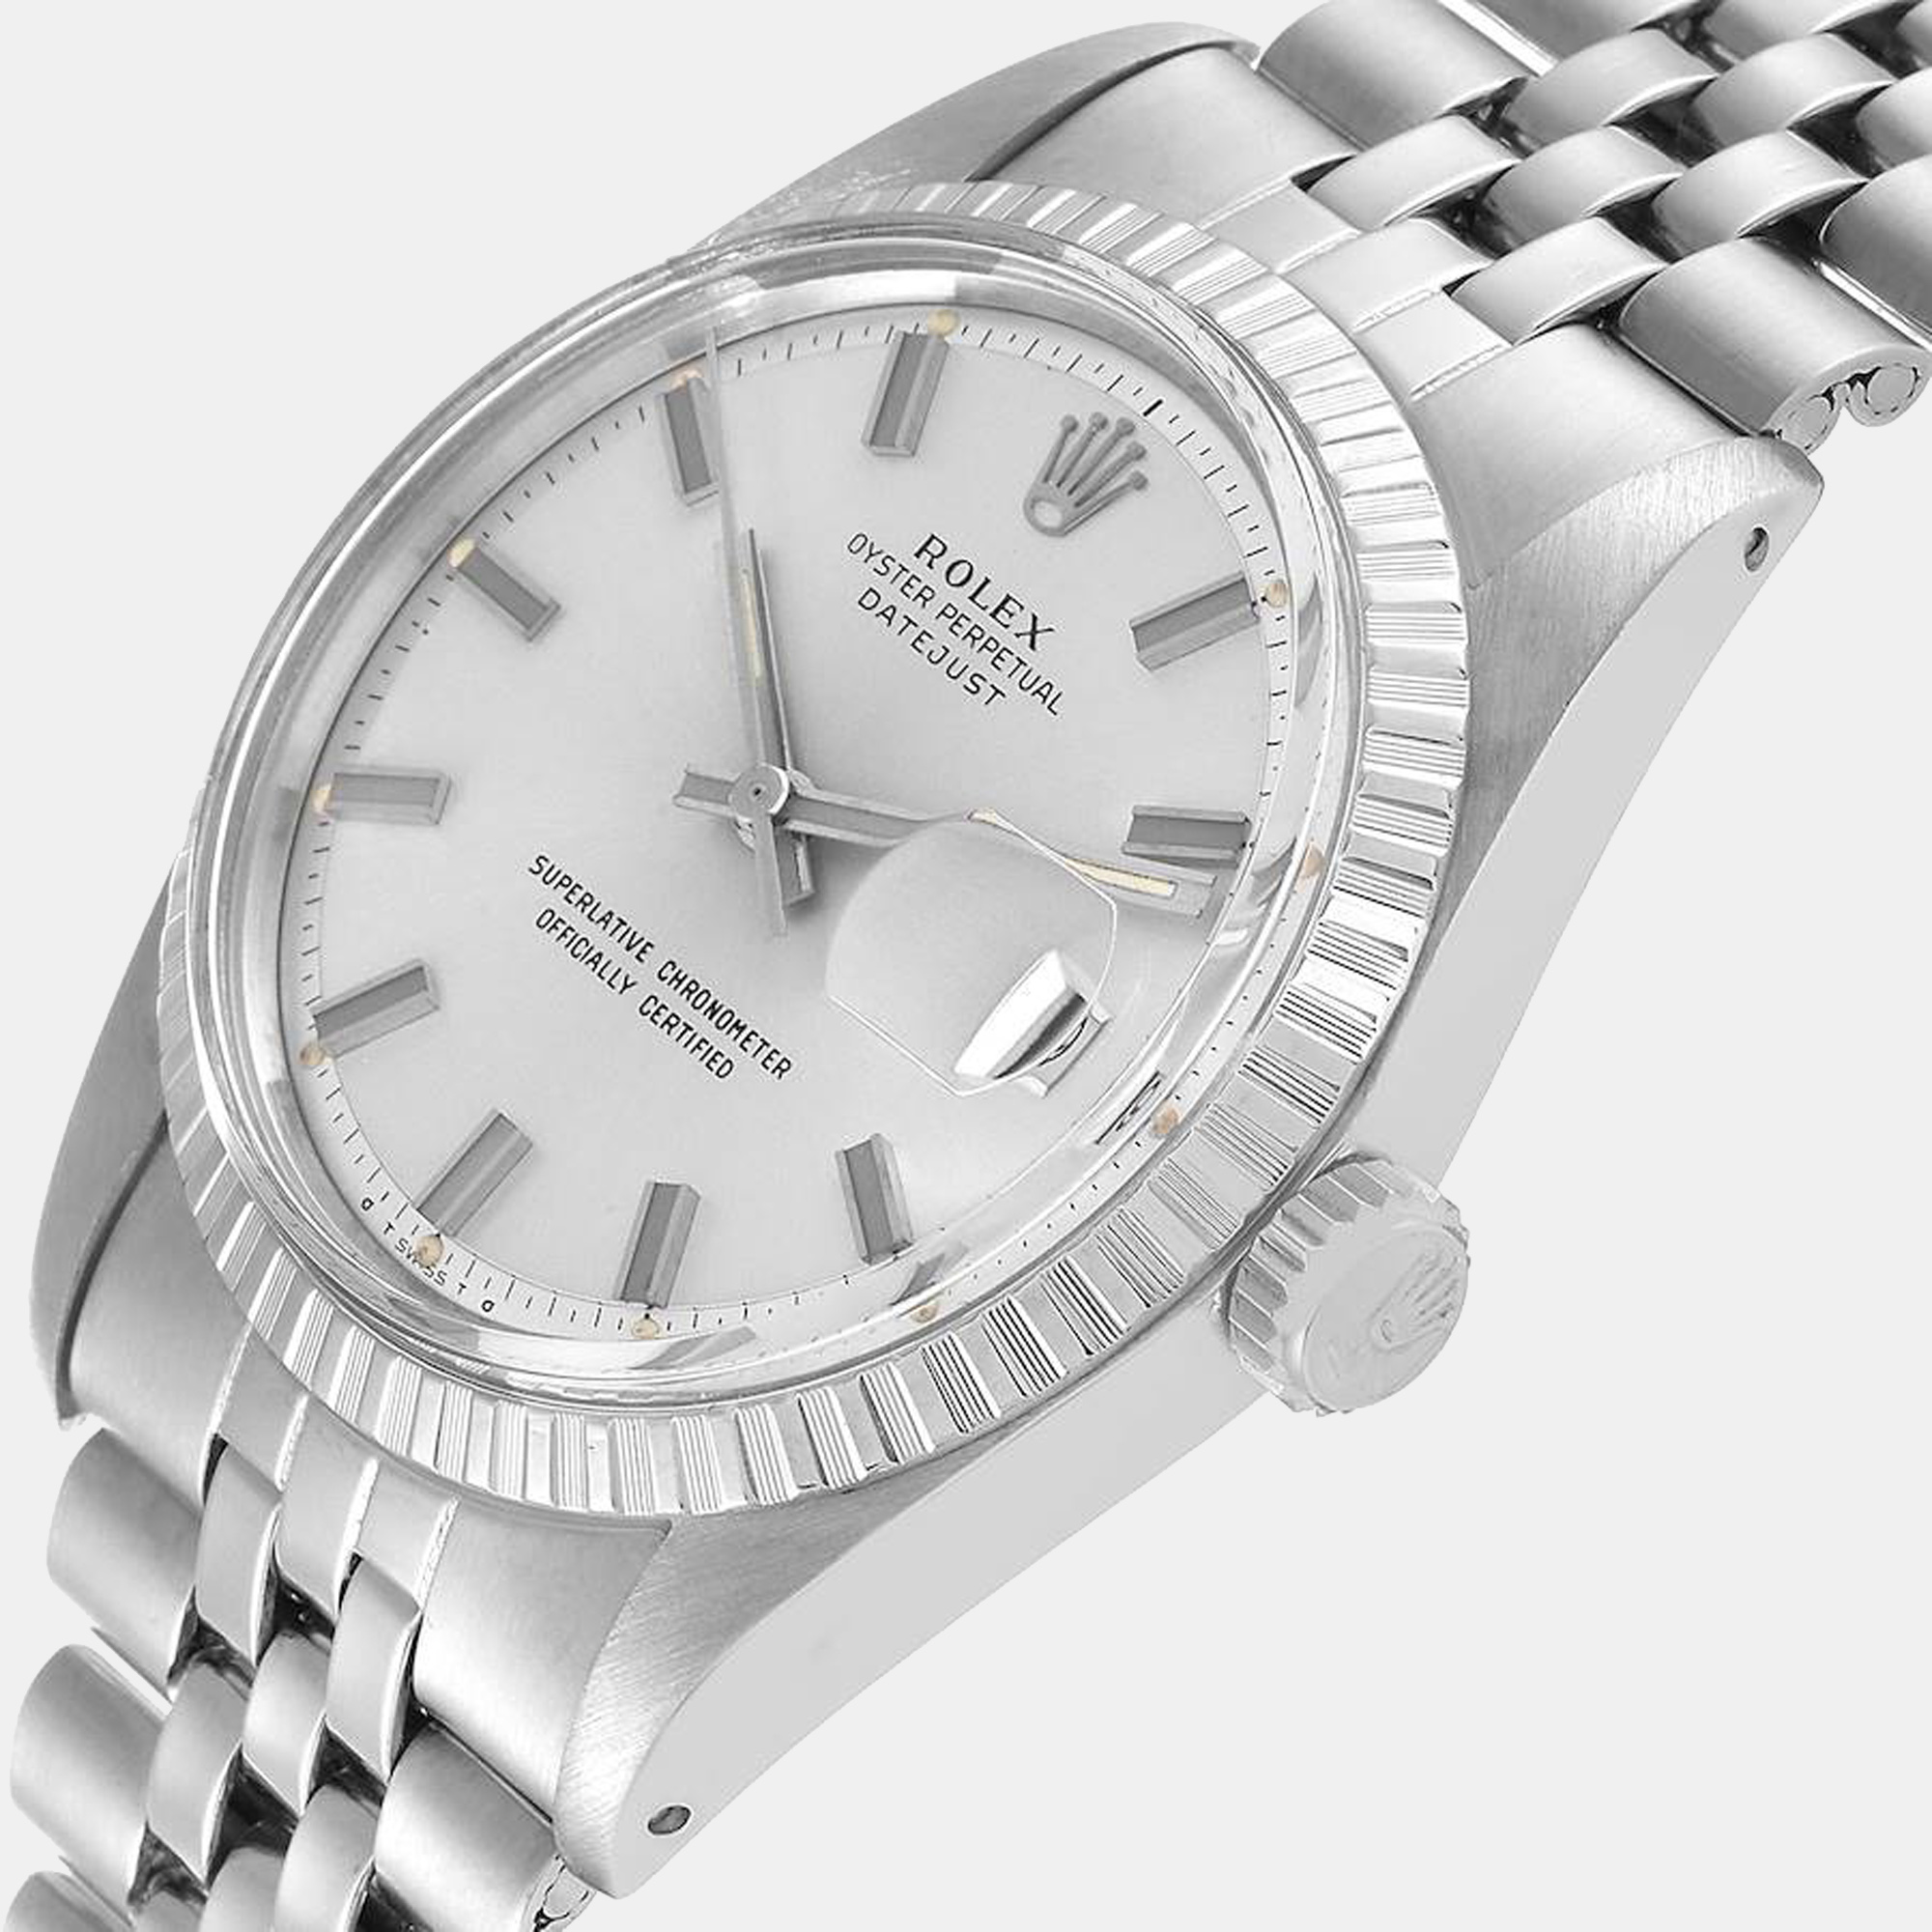 

Rolex Silver Stainless Steel Datejust Vintage 1603 Men's Wristwatch 36 mm